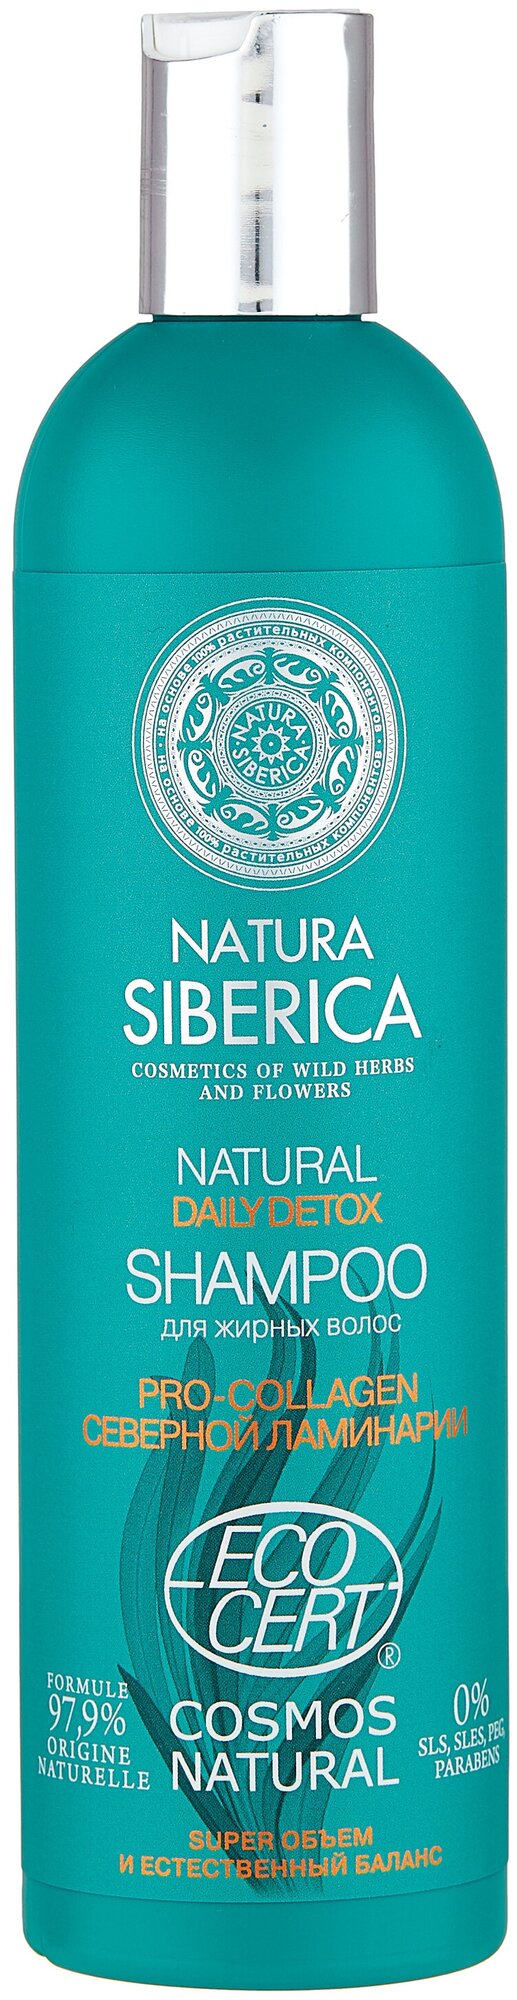 Шампунь для жирных волос Natura Siberica daily detox, 400 мл - фотография № 1